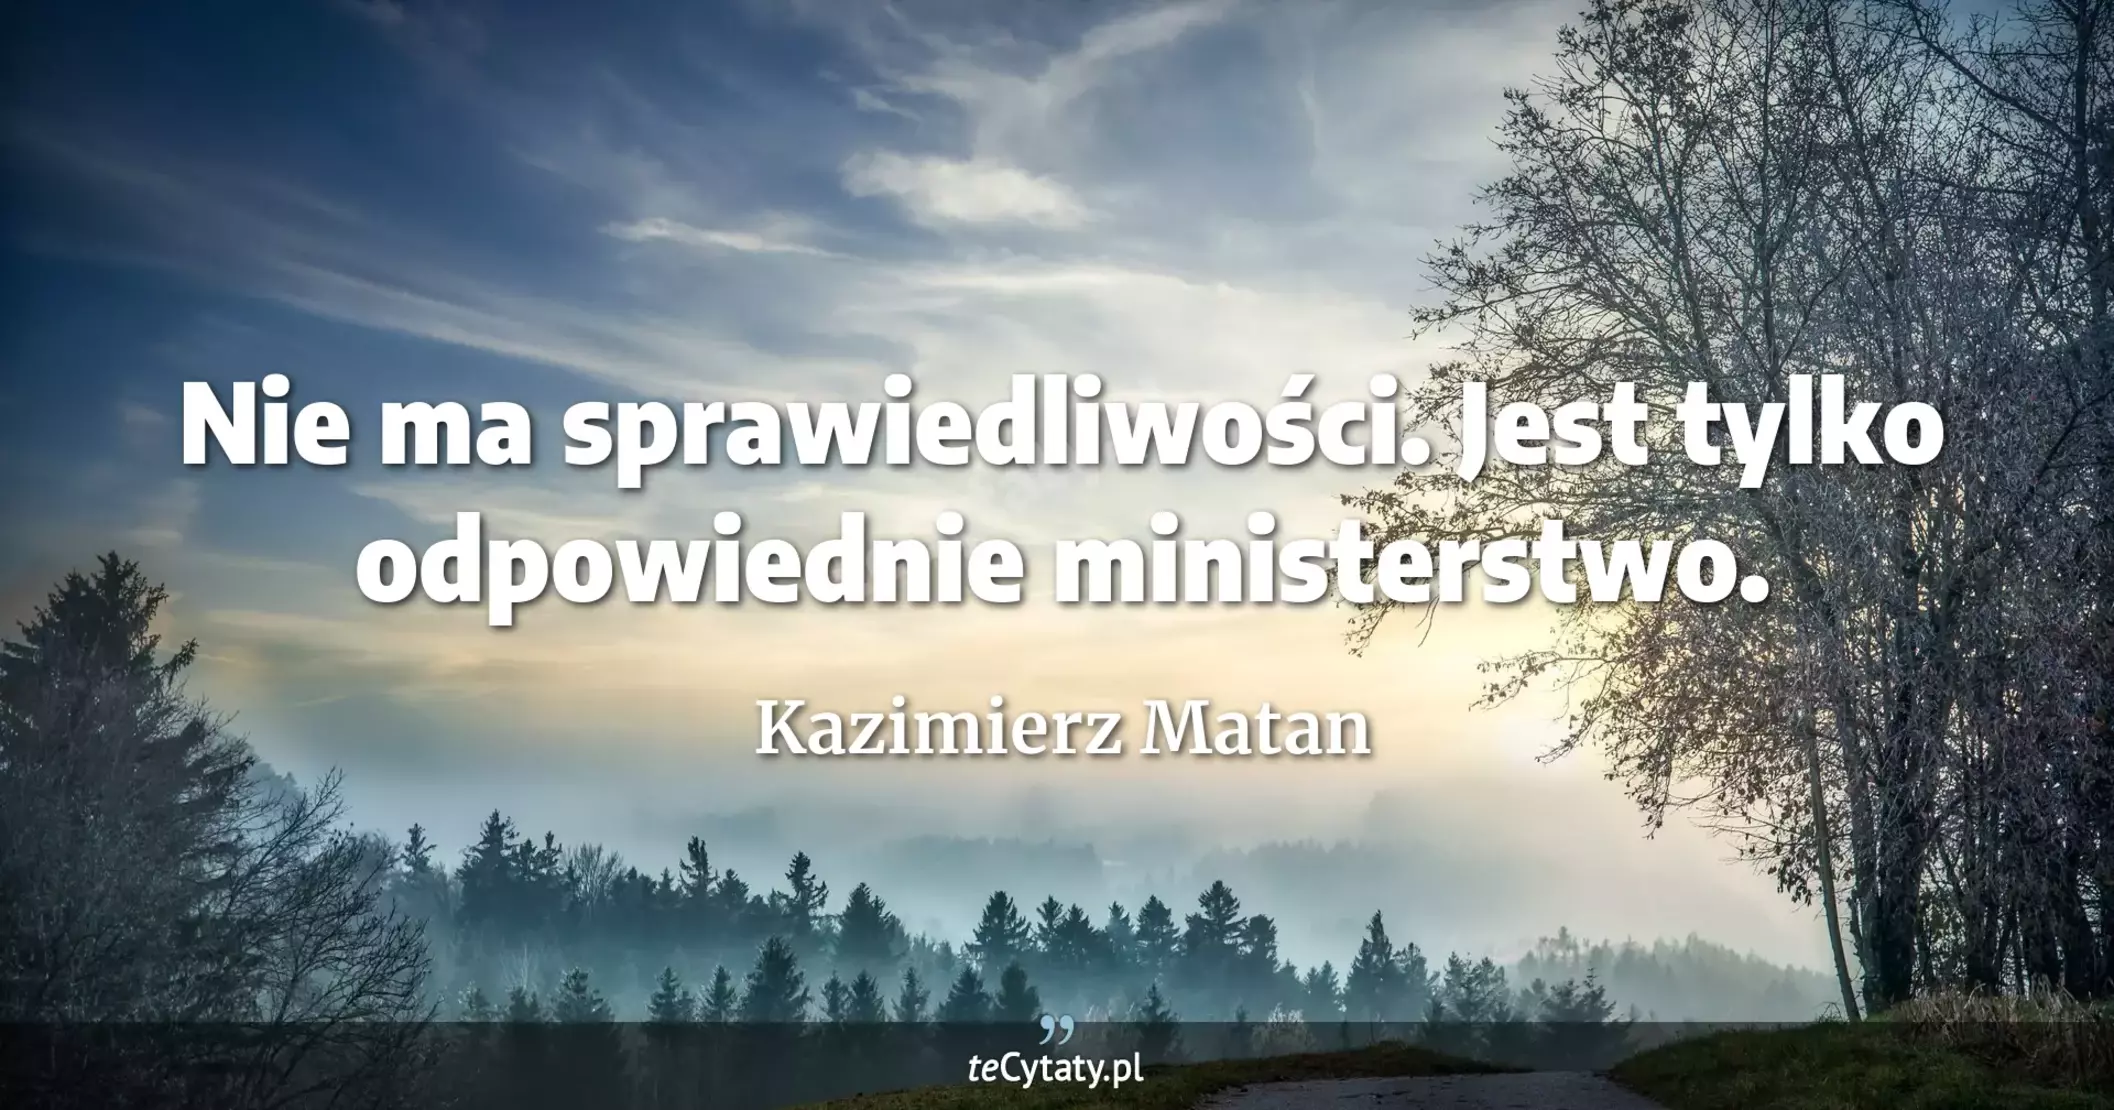 Nie ma sprawiedliwości. Jest tylko odpowiednie ministerstwo. - Kazimierz Matan